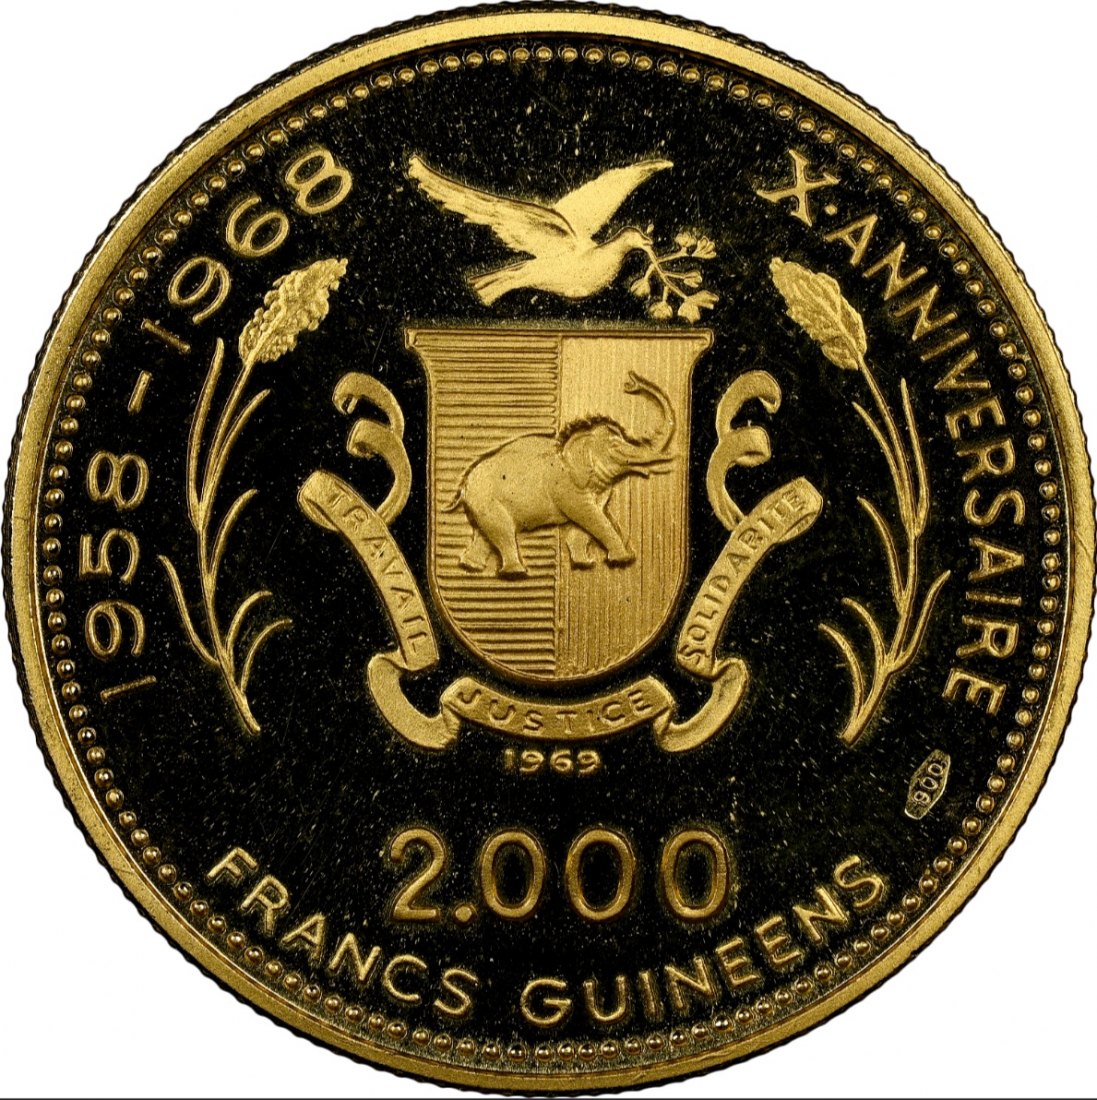  Guinea 2.000 Francs 1969 | NGC PF69 ULTRA CAMEO | Mondlandung   